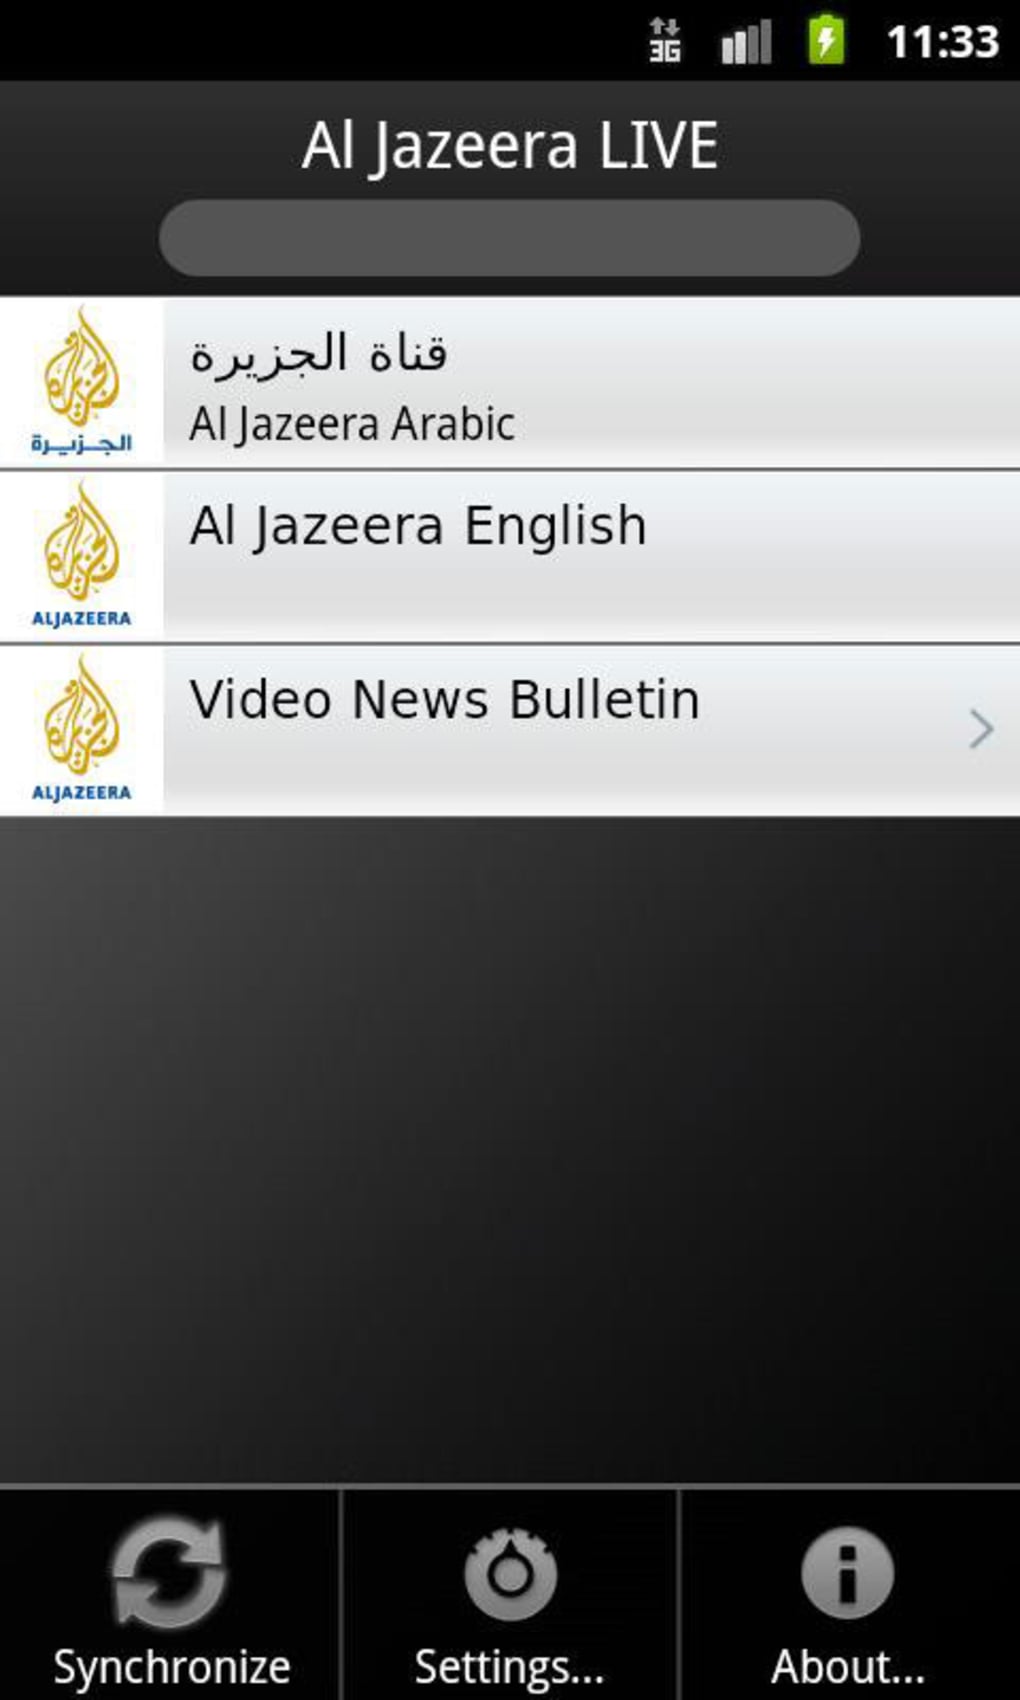 al jazeera sport live stream arabic